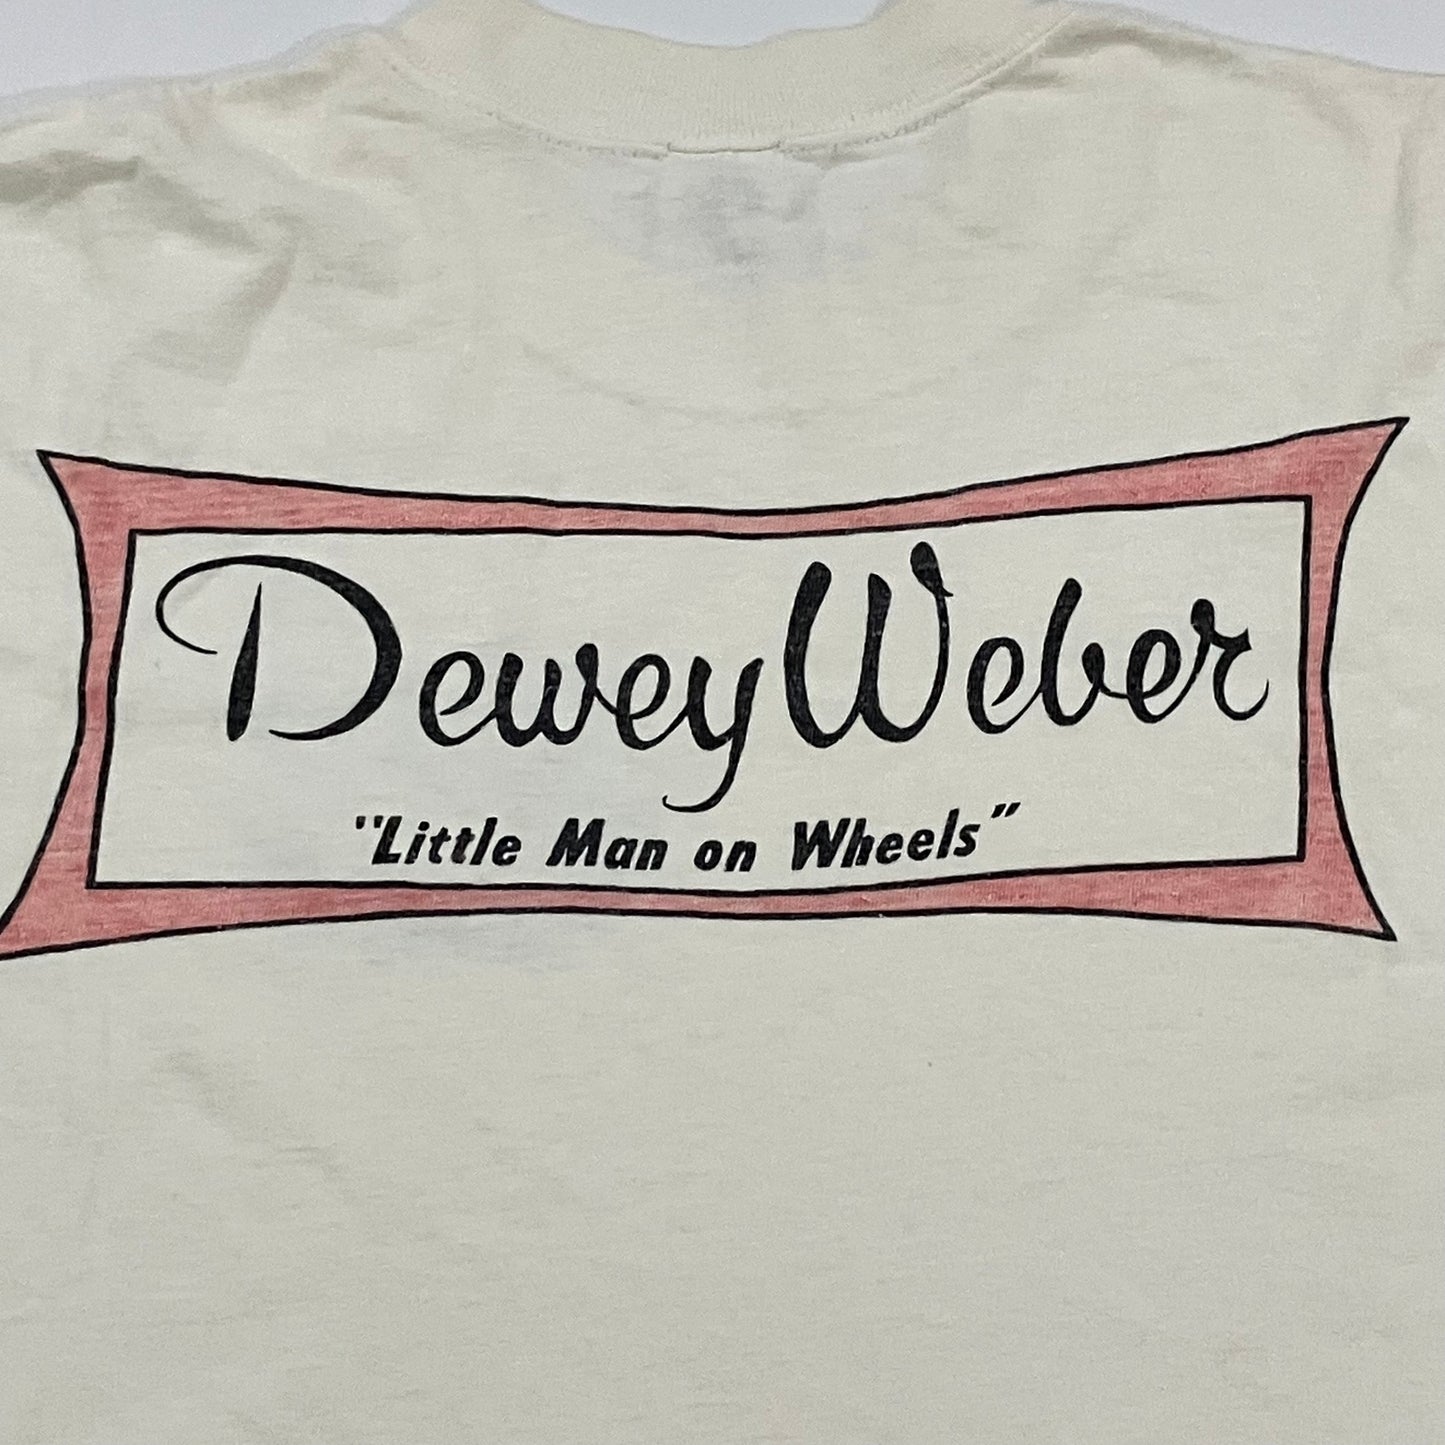 Dewey Weber Little Man on Wheels